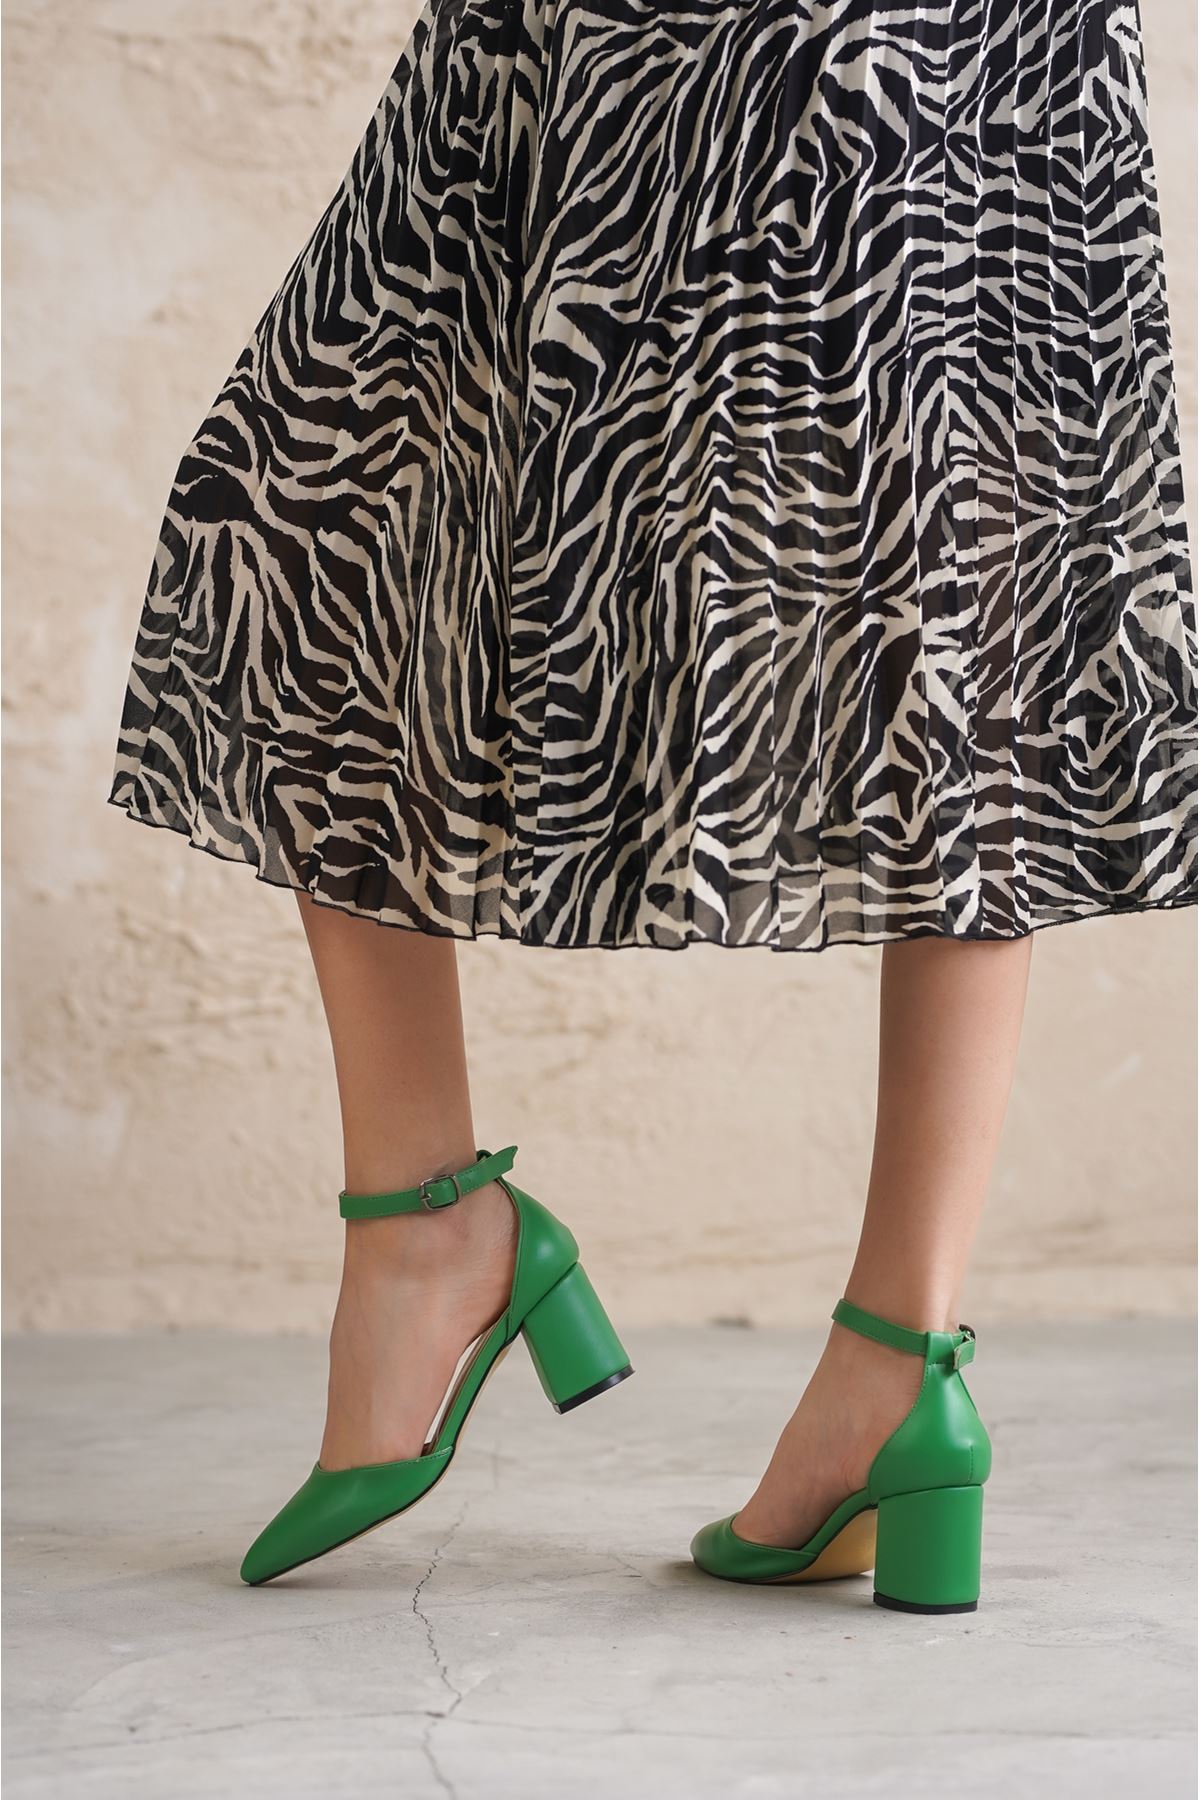 Kadın Nomi KısaTopuklu Ayakkabı - Yeşil Deri